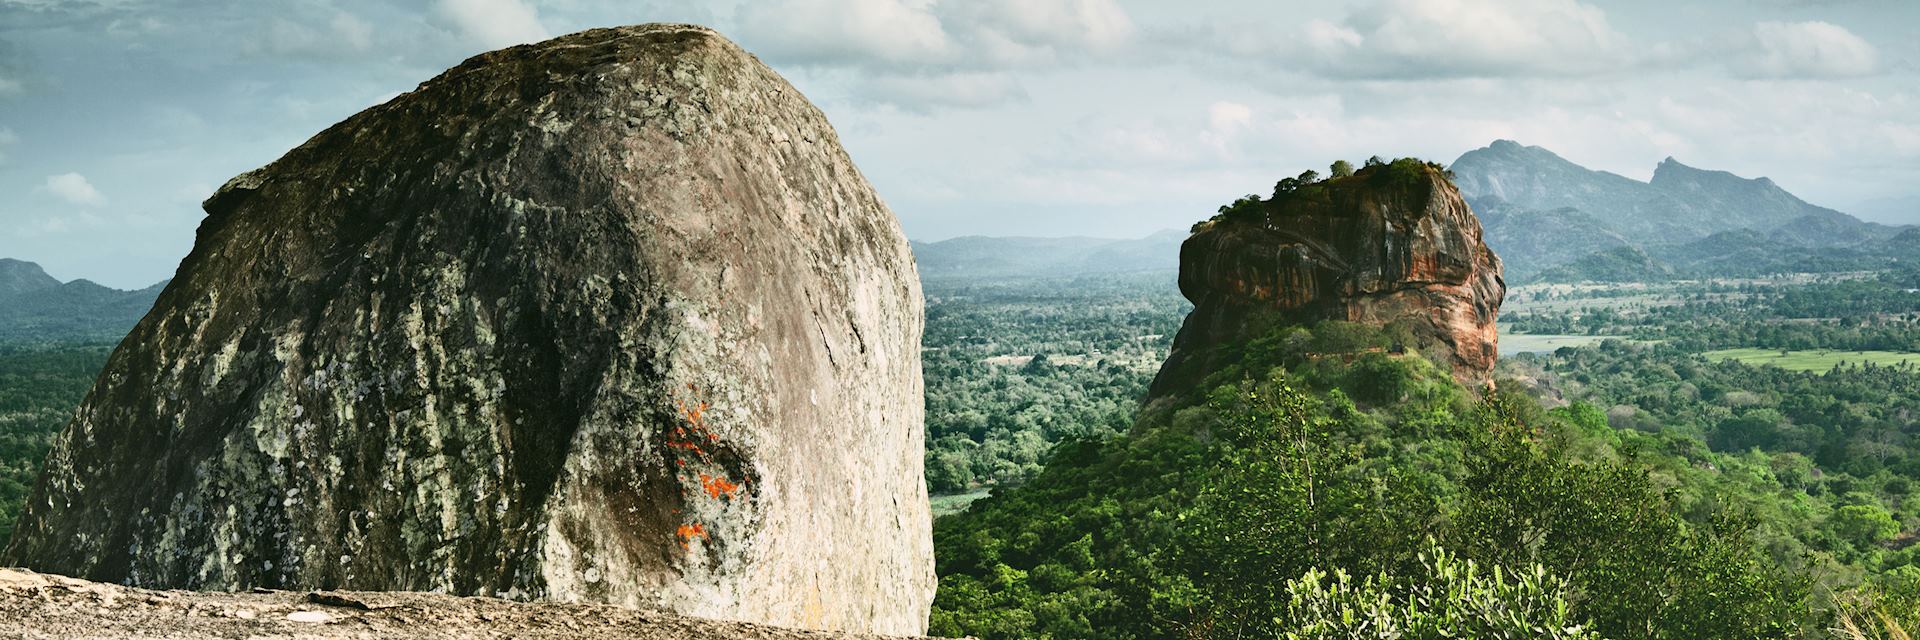 Visit Sigiriya on a trip to Sri Lanka | Audley Travel